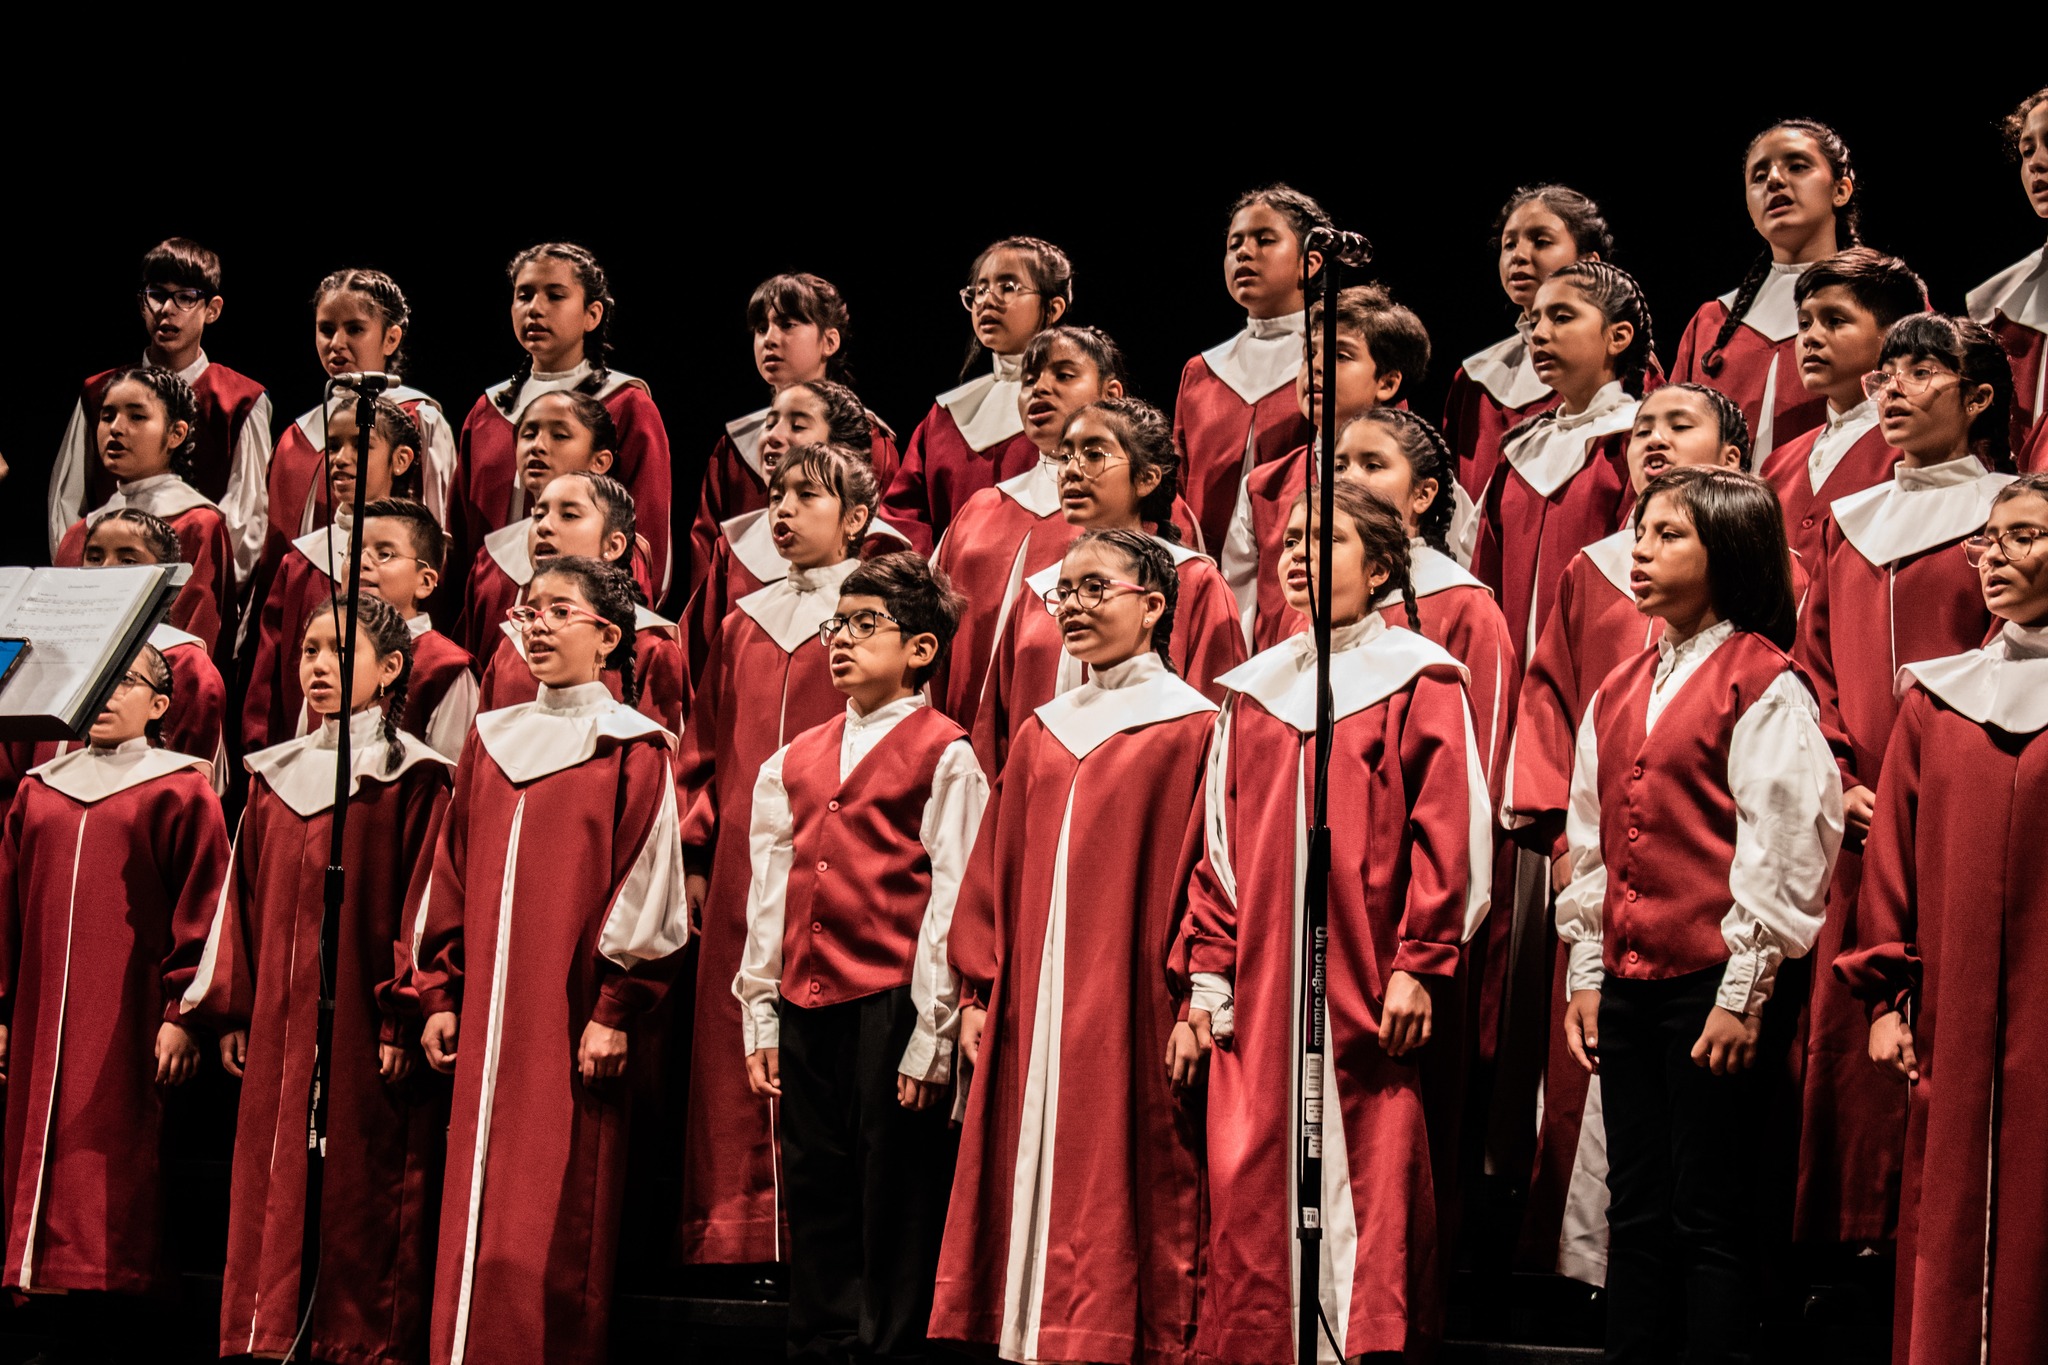 Coro Nacional de Niños del Perú presenta su concierto gratuito “De la selva a la costa” en el LUM